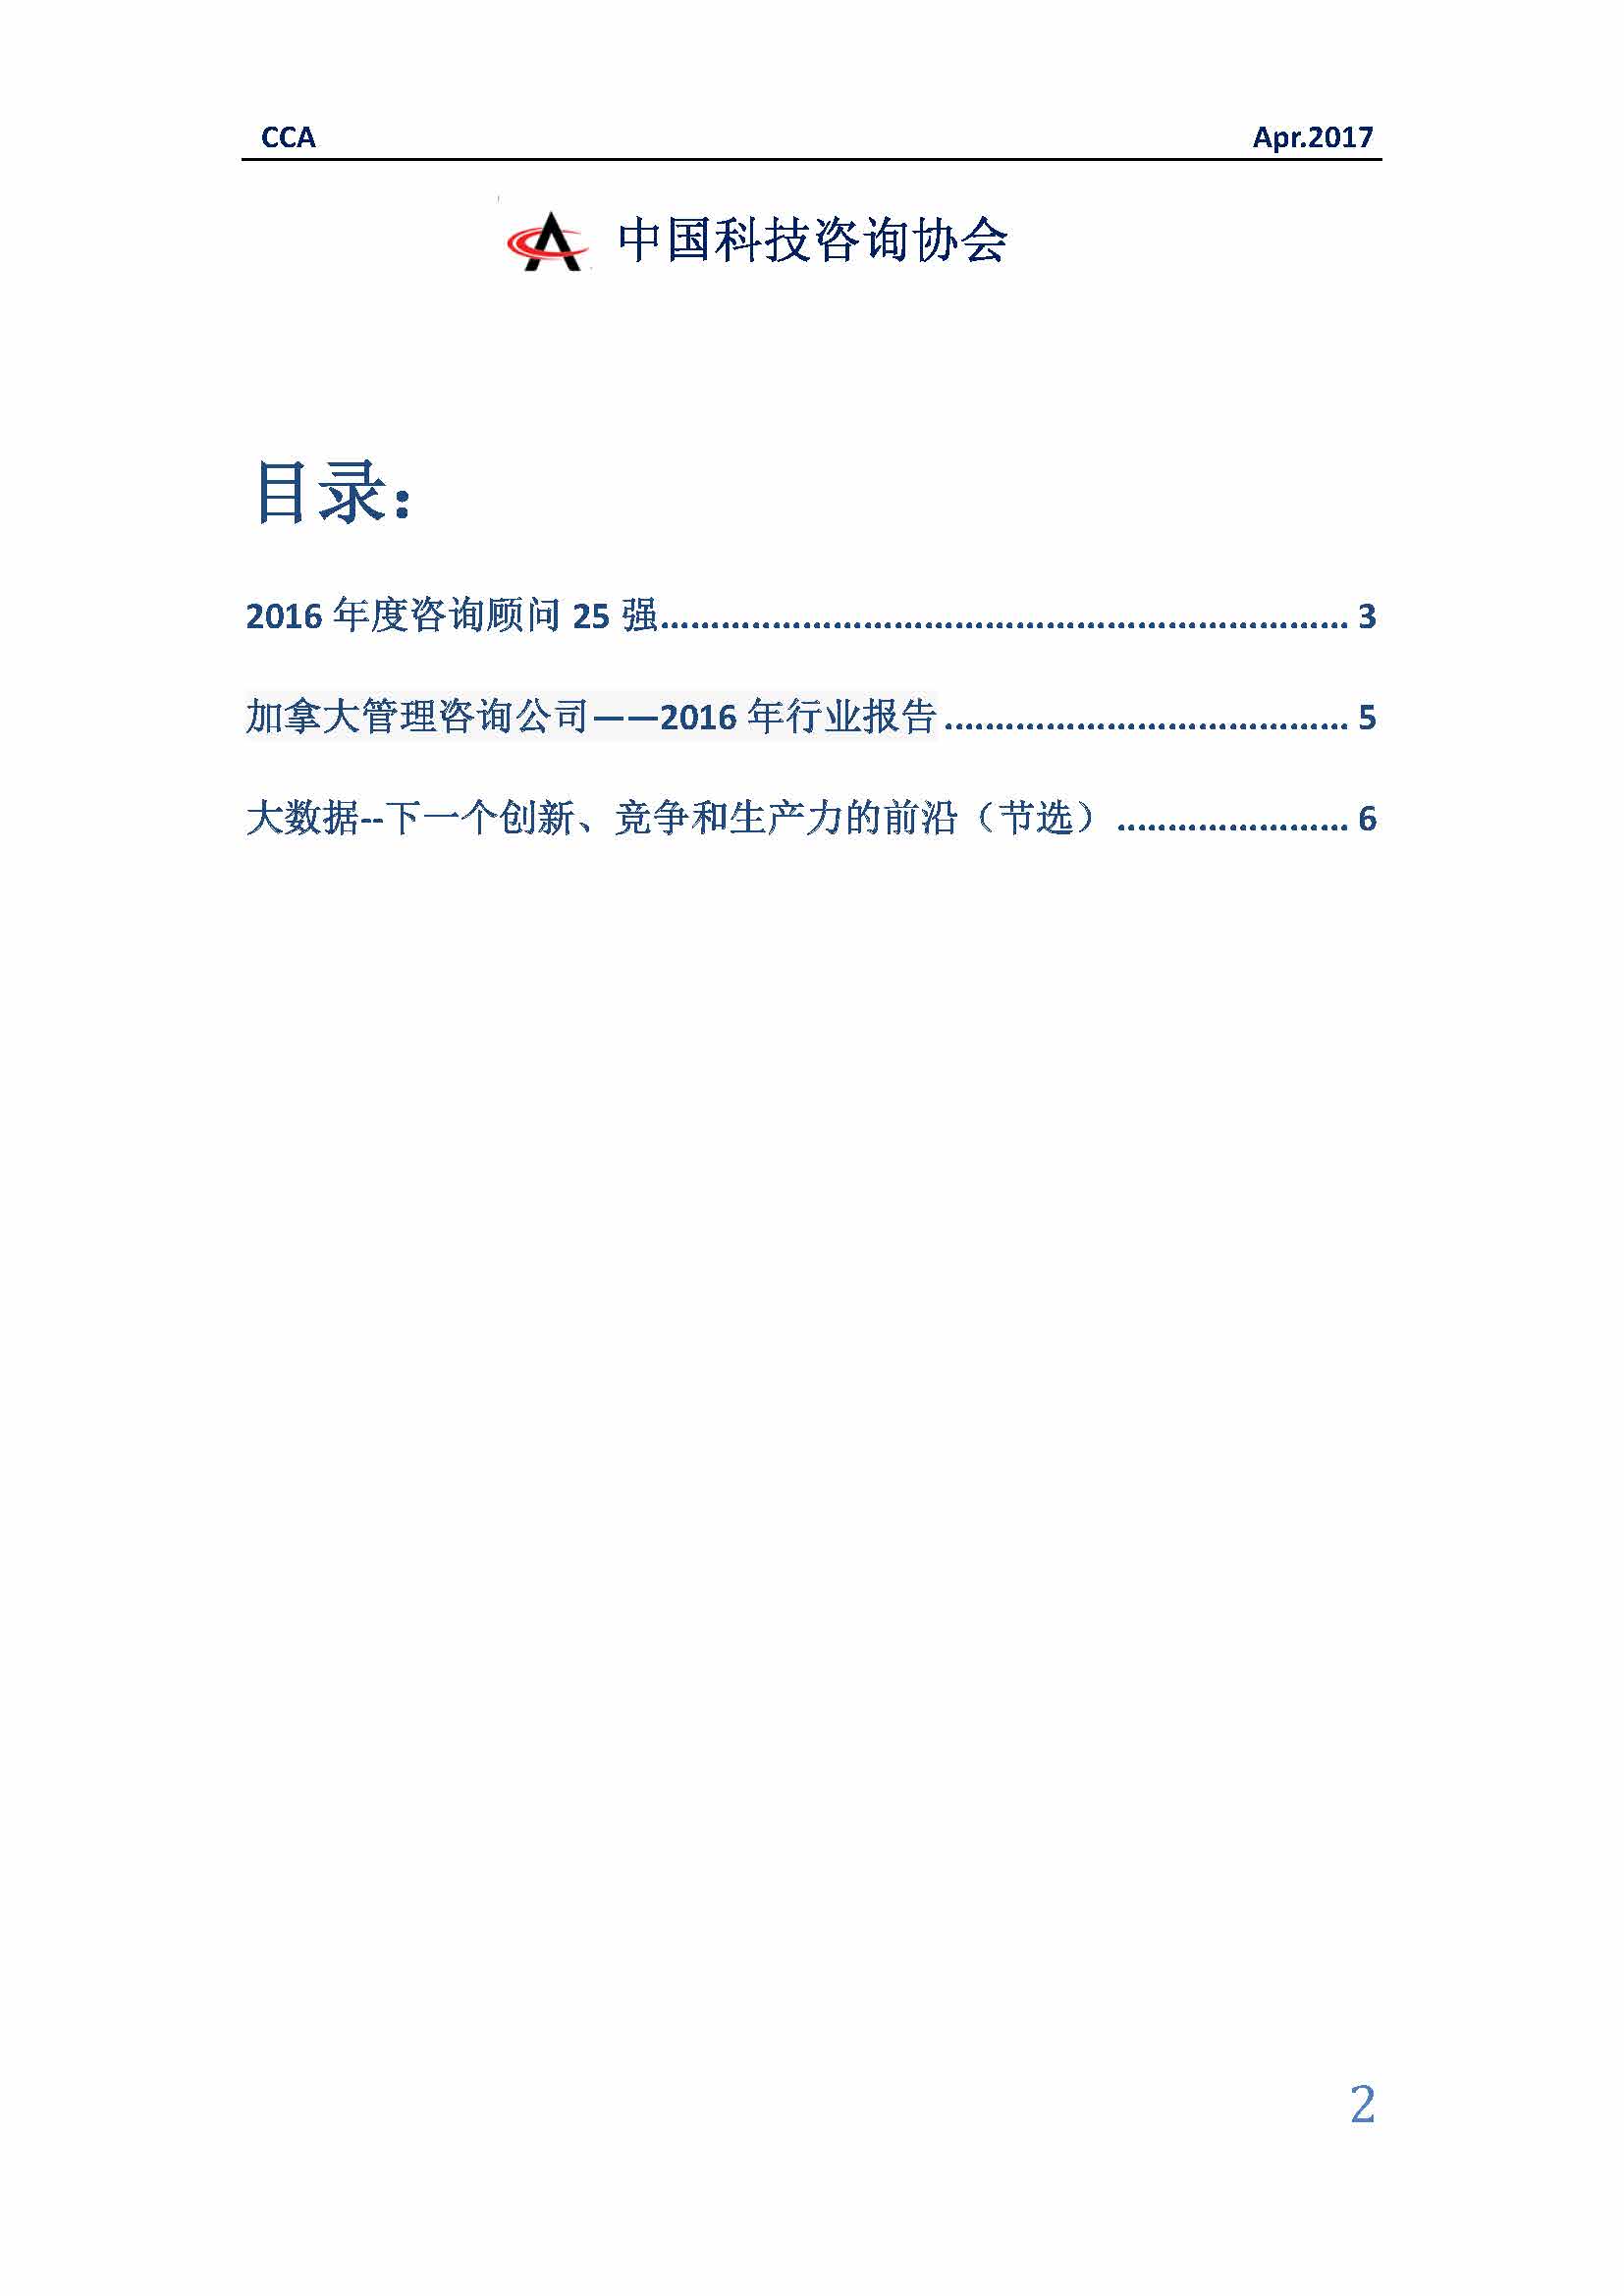 中国科技咨询协会国际快讯（第二十八期）_页面_02.jpg